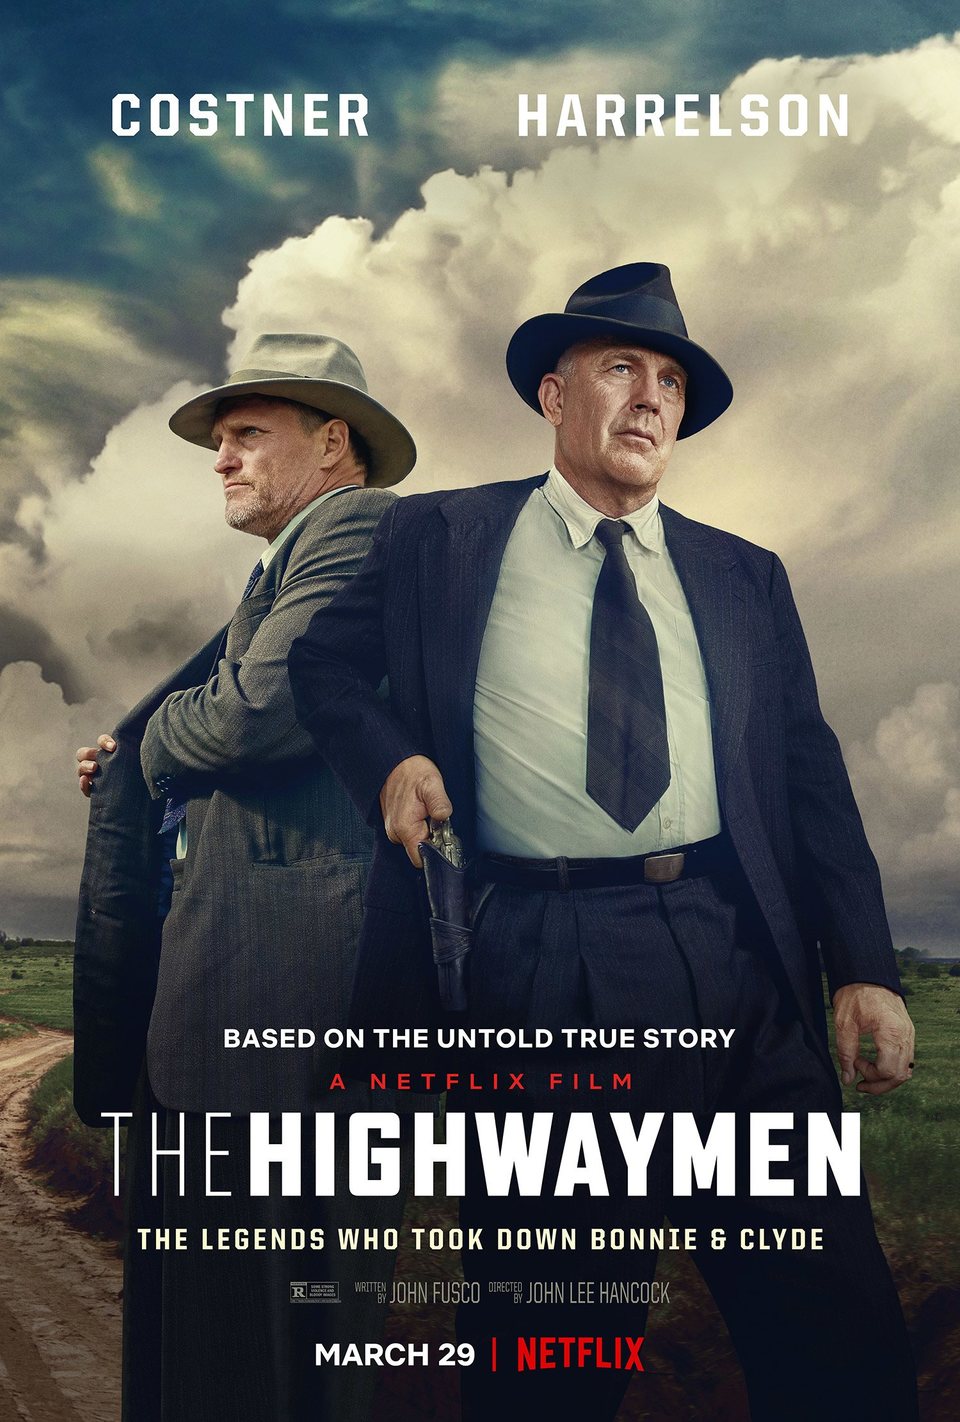 Cartel de The Highwaymen - The Highwaymen